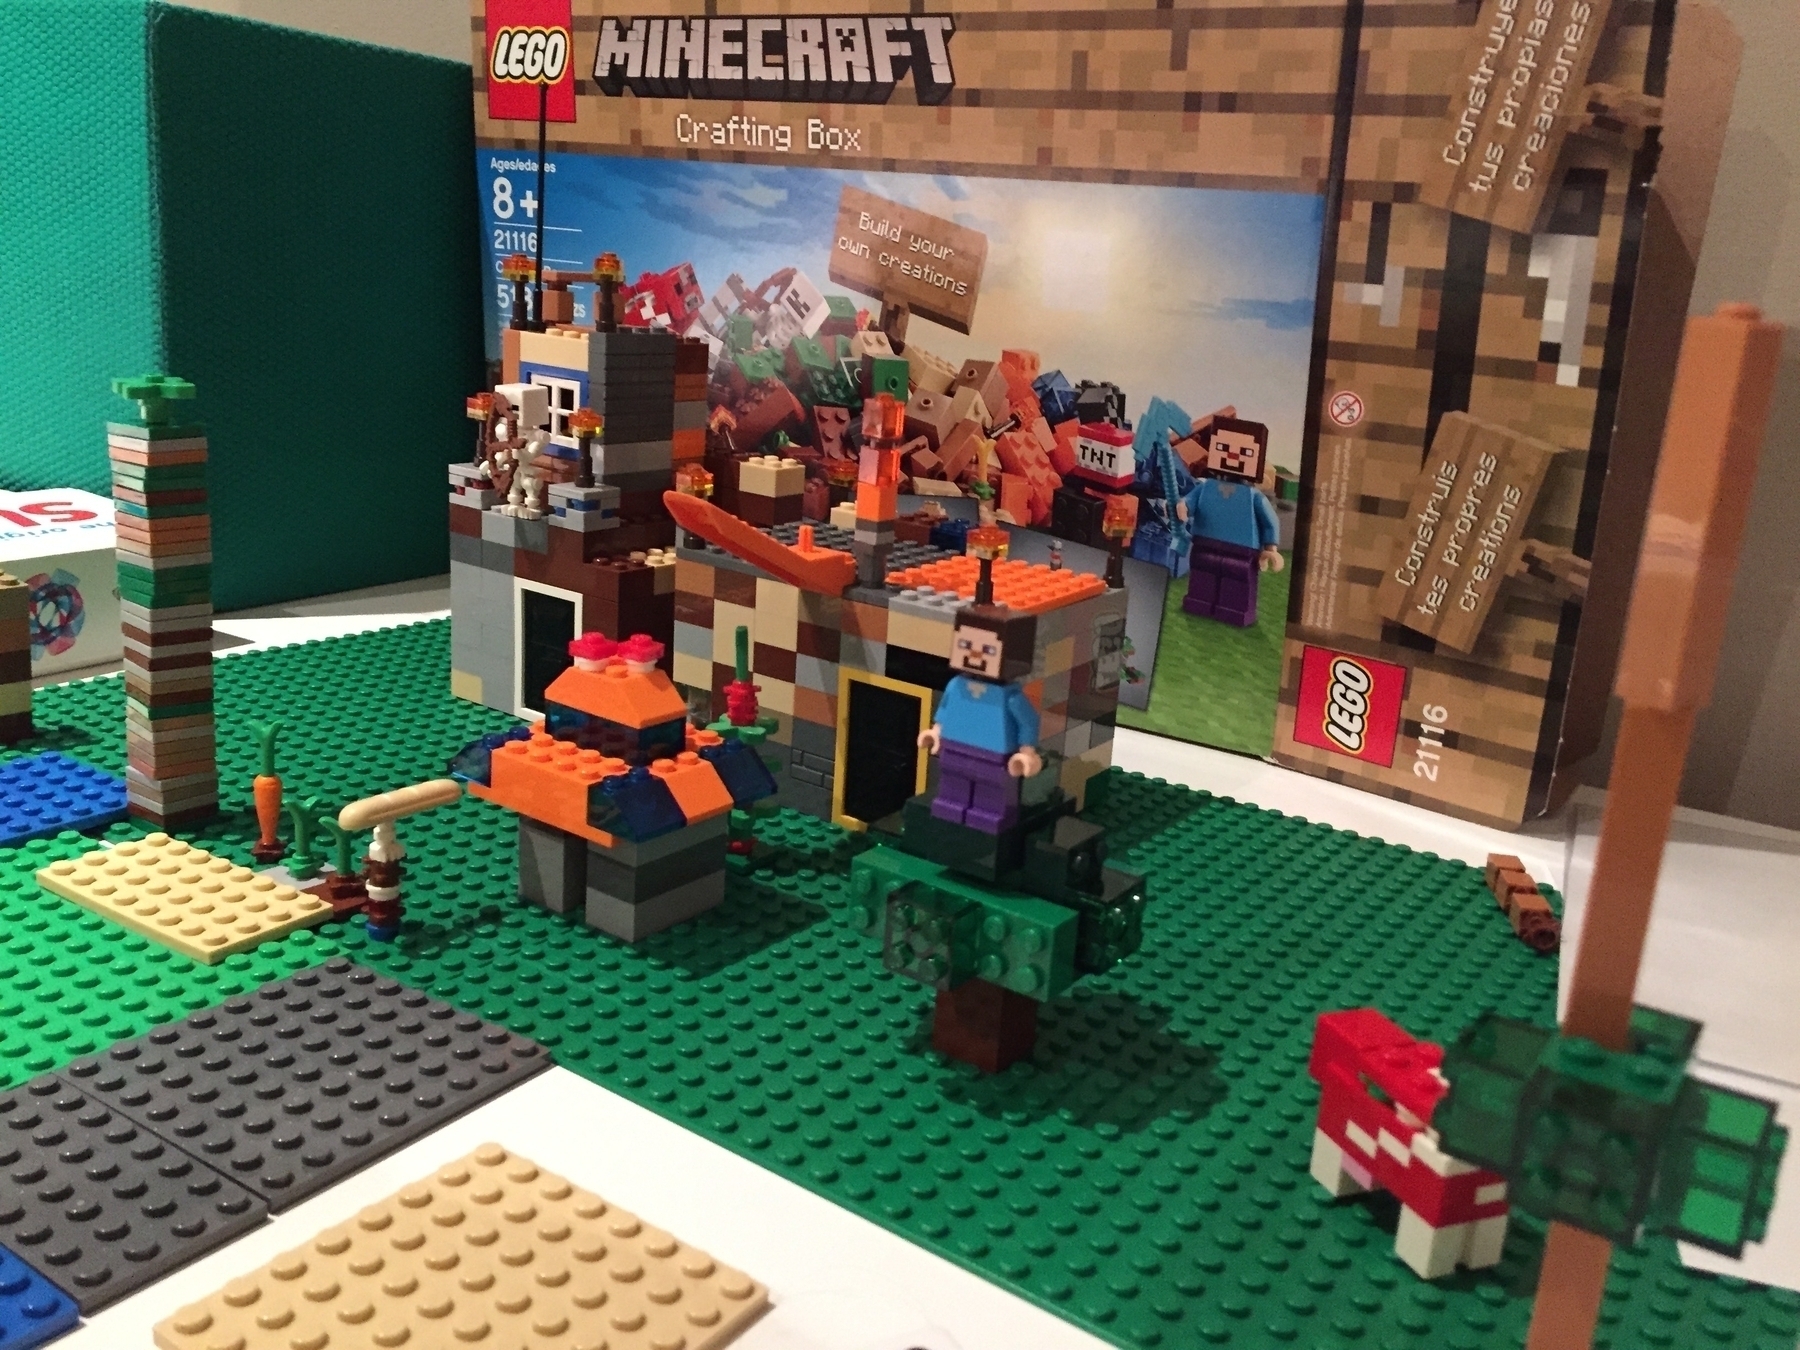 A minecraft Lego set